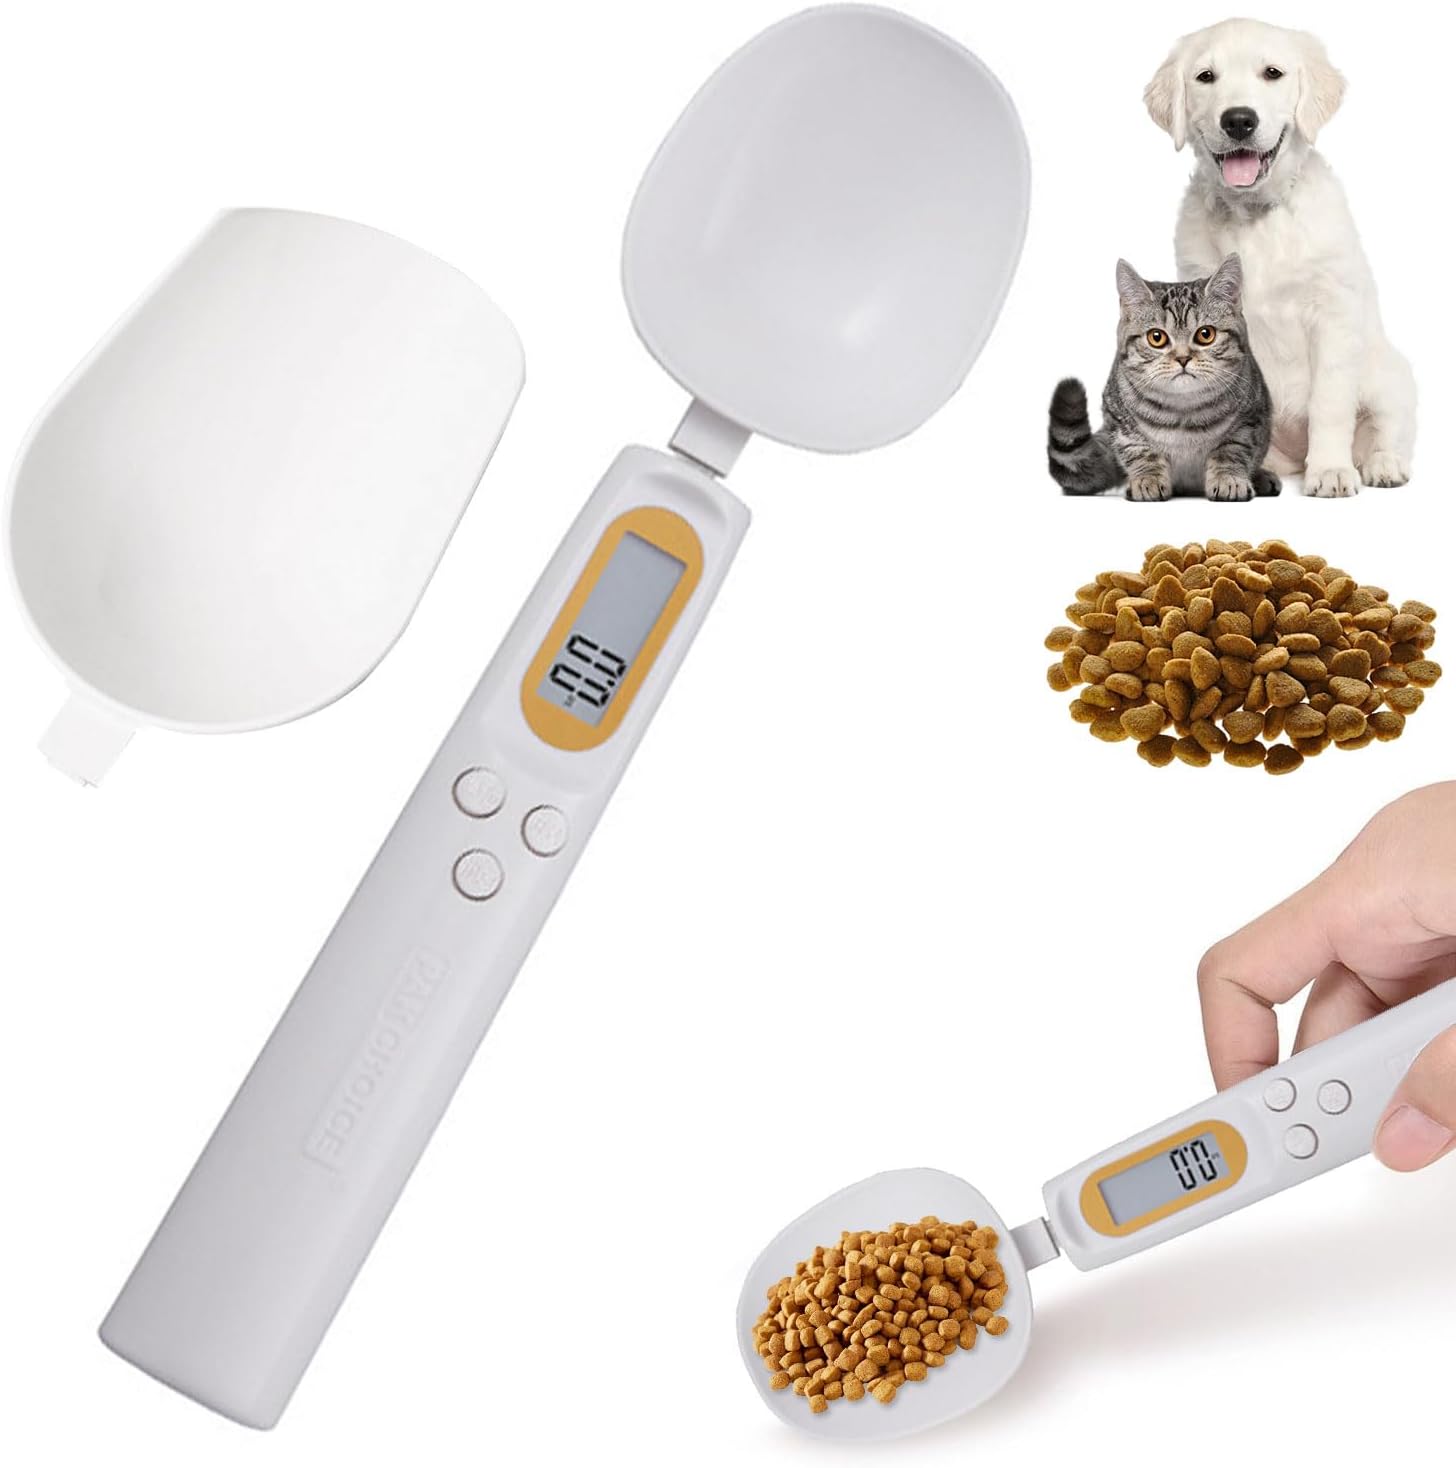 計量スプーン 大・小2種類 犬・猫用 デジタル計量スプーン 充電式 LCDモニター測定 取り外し可能 高精度±1g 4測定単位 耐久性 健康 科学的飼育 ペット用品